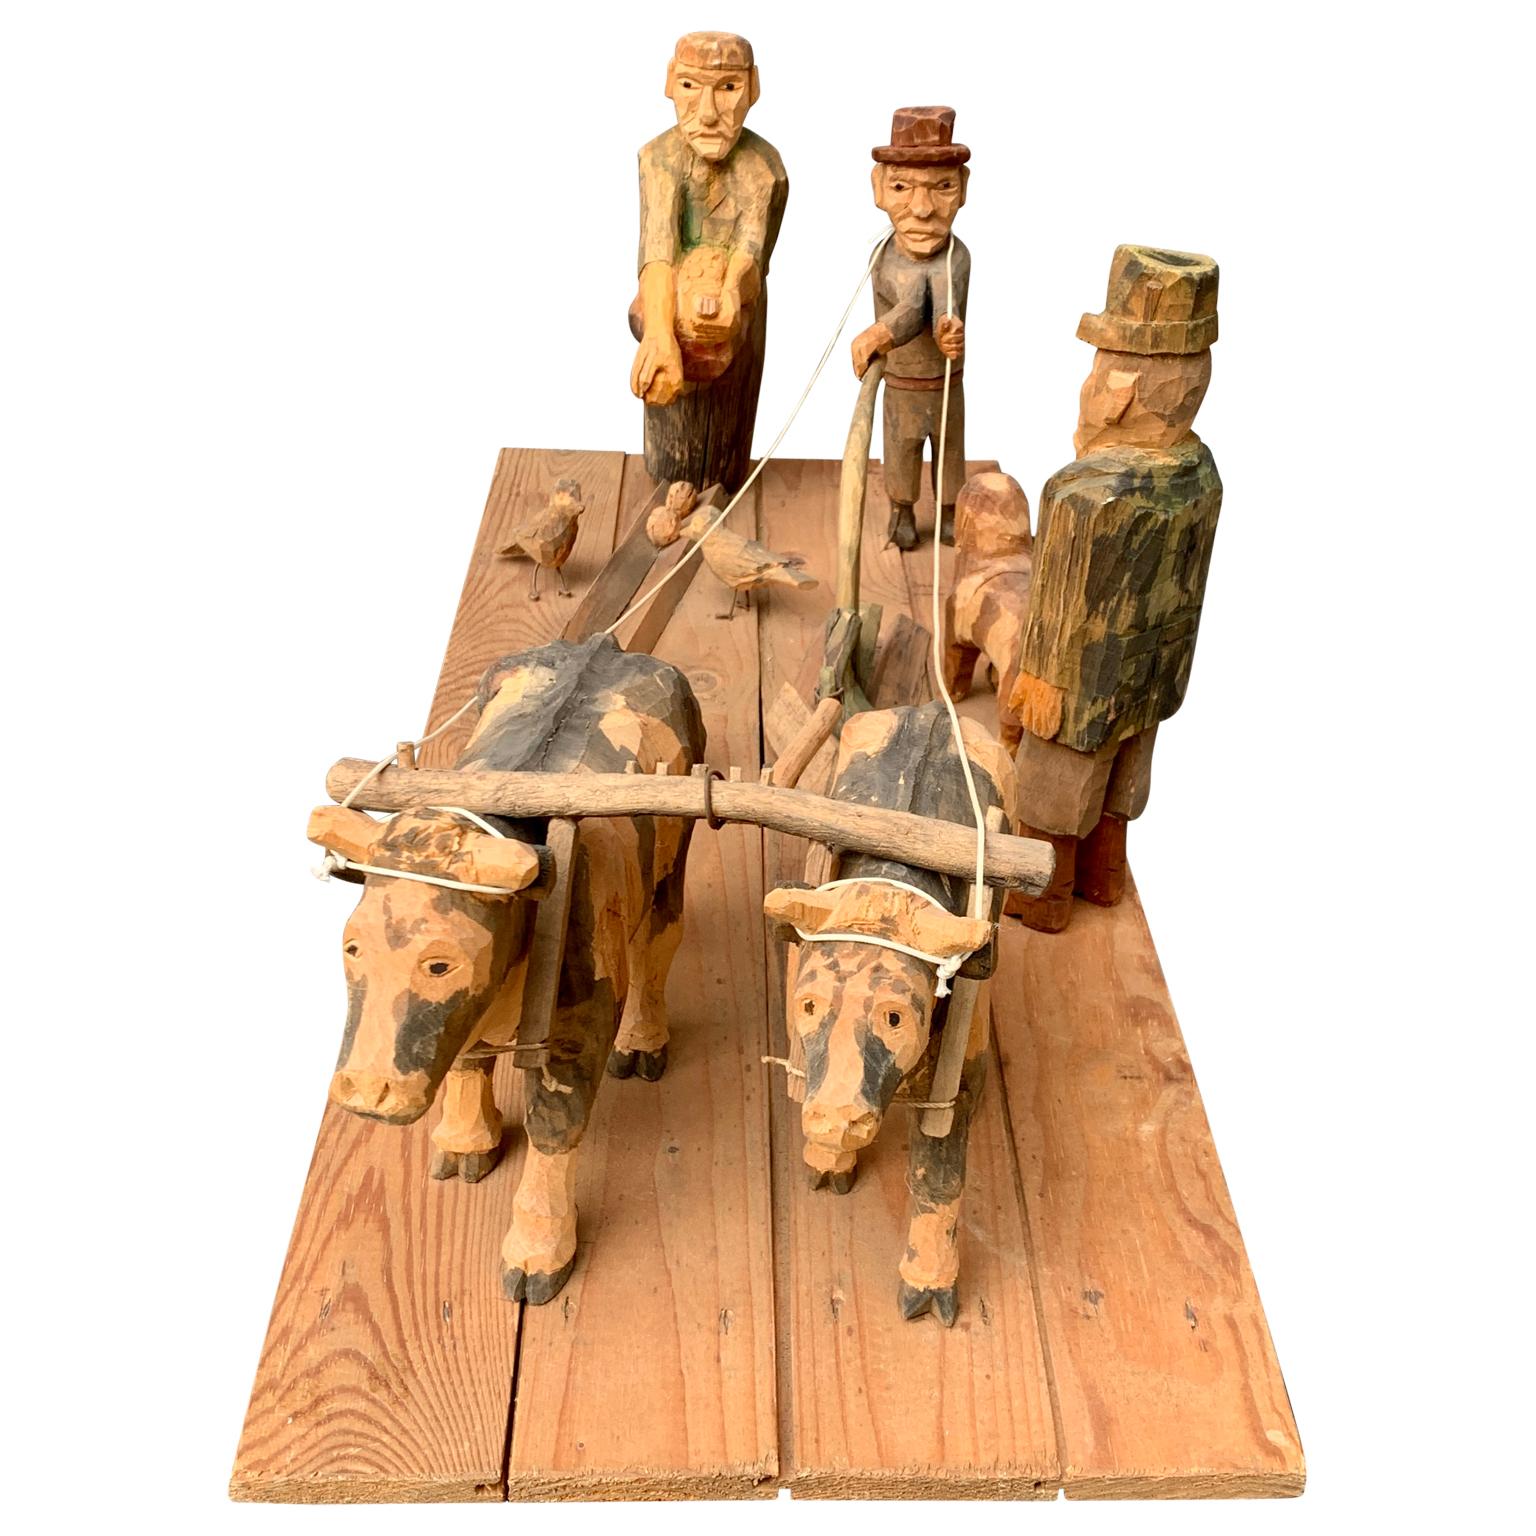 Eine schwedische Skulptur aus geschnitzten und bemalten Holzfiguren von Kartoffelbauern, die auf den skandinavischen Feldern arbeiten. Schweden hat eine lange und bekannte Tradition der handgeschnitzten Volkskunst aus Holz. Sie begann in der